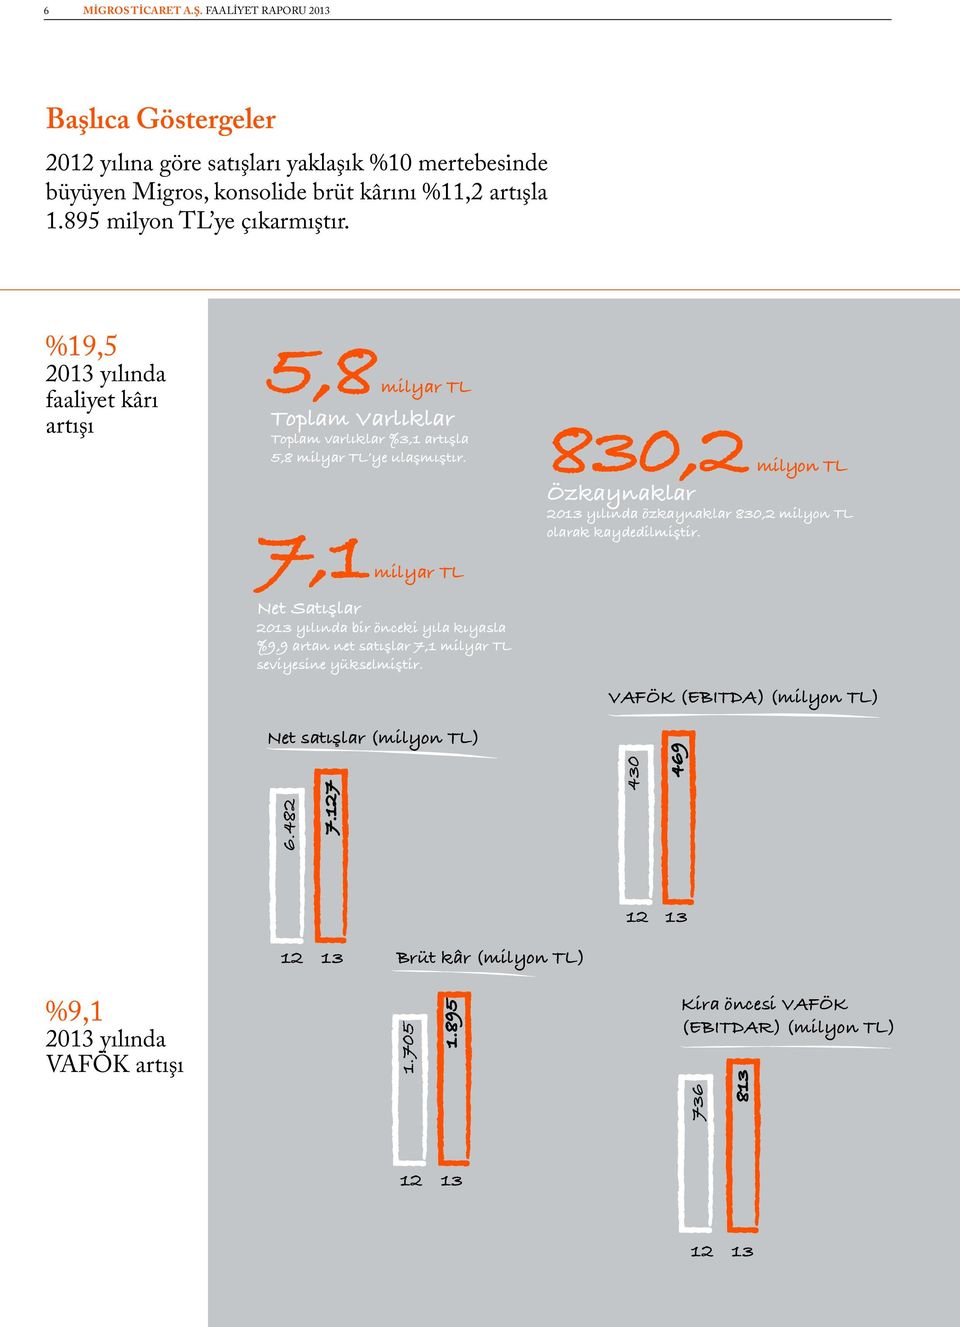 7,1 milyar TL Net Satışlar 2013 yılında bir önceki yıla kıyasla %9,9 artan net satışlar 7,1 milyar TL seviyesine yükselmiştir.